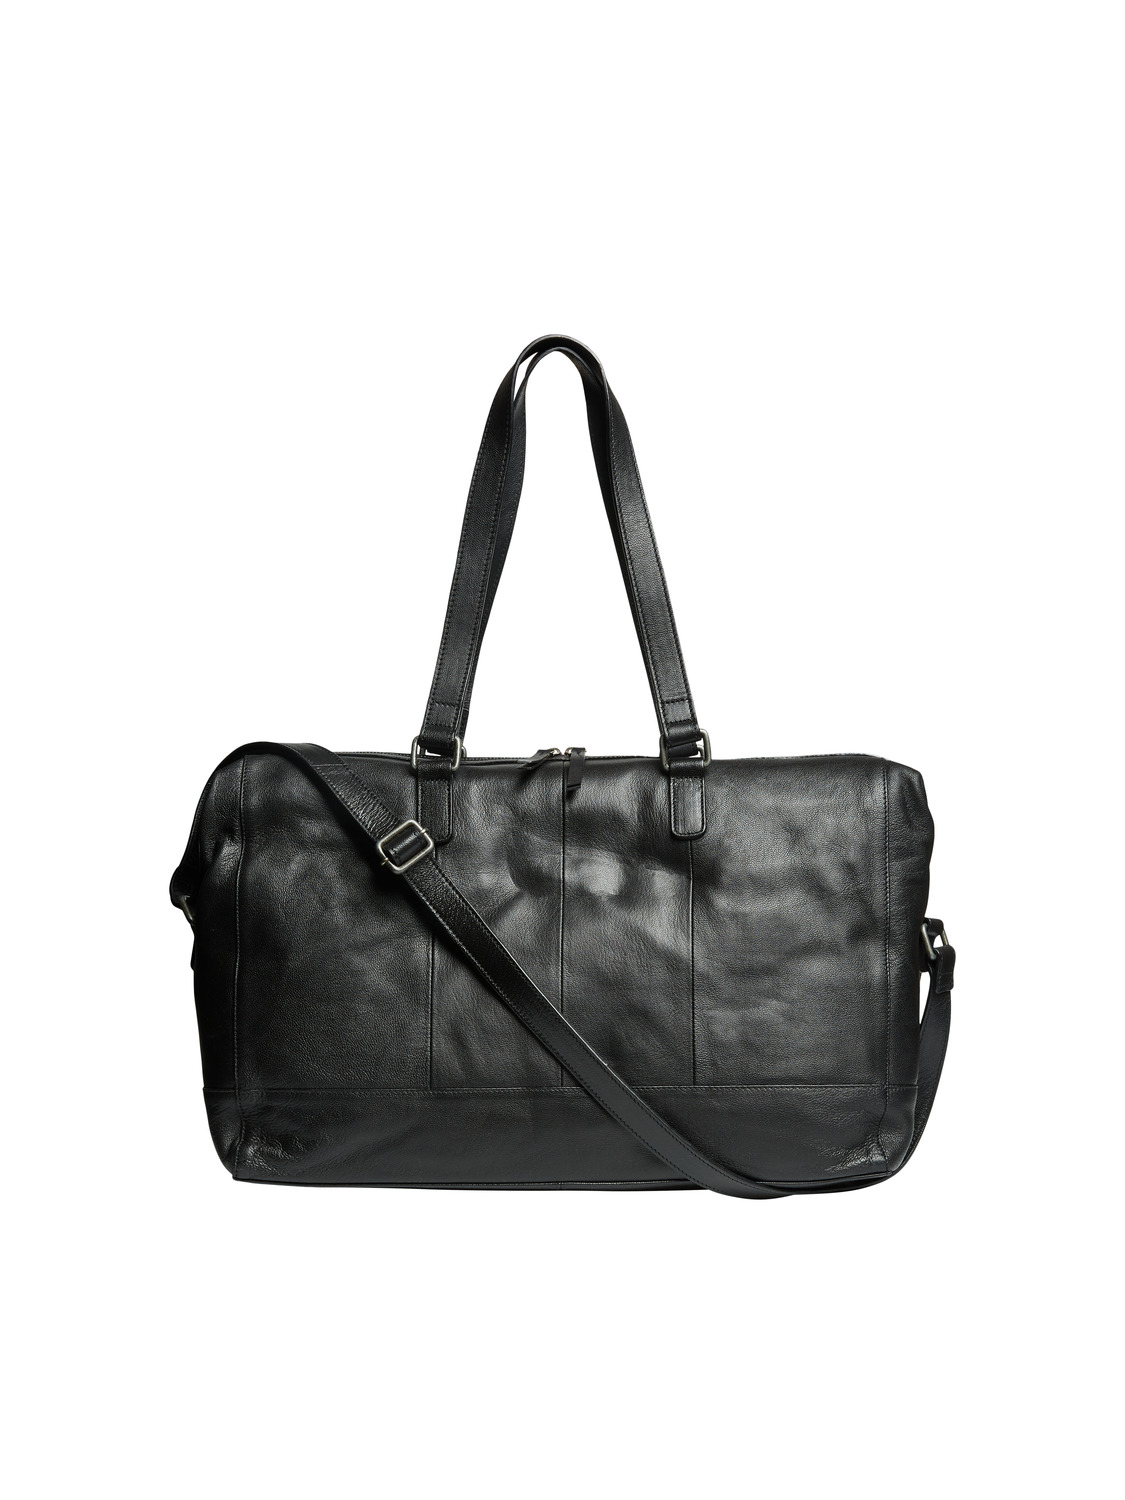 MAMA.LICIOUS Changing bag -Black - 20014457